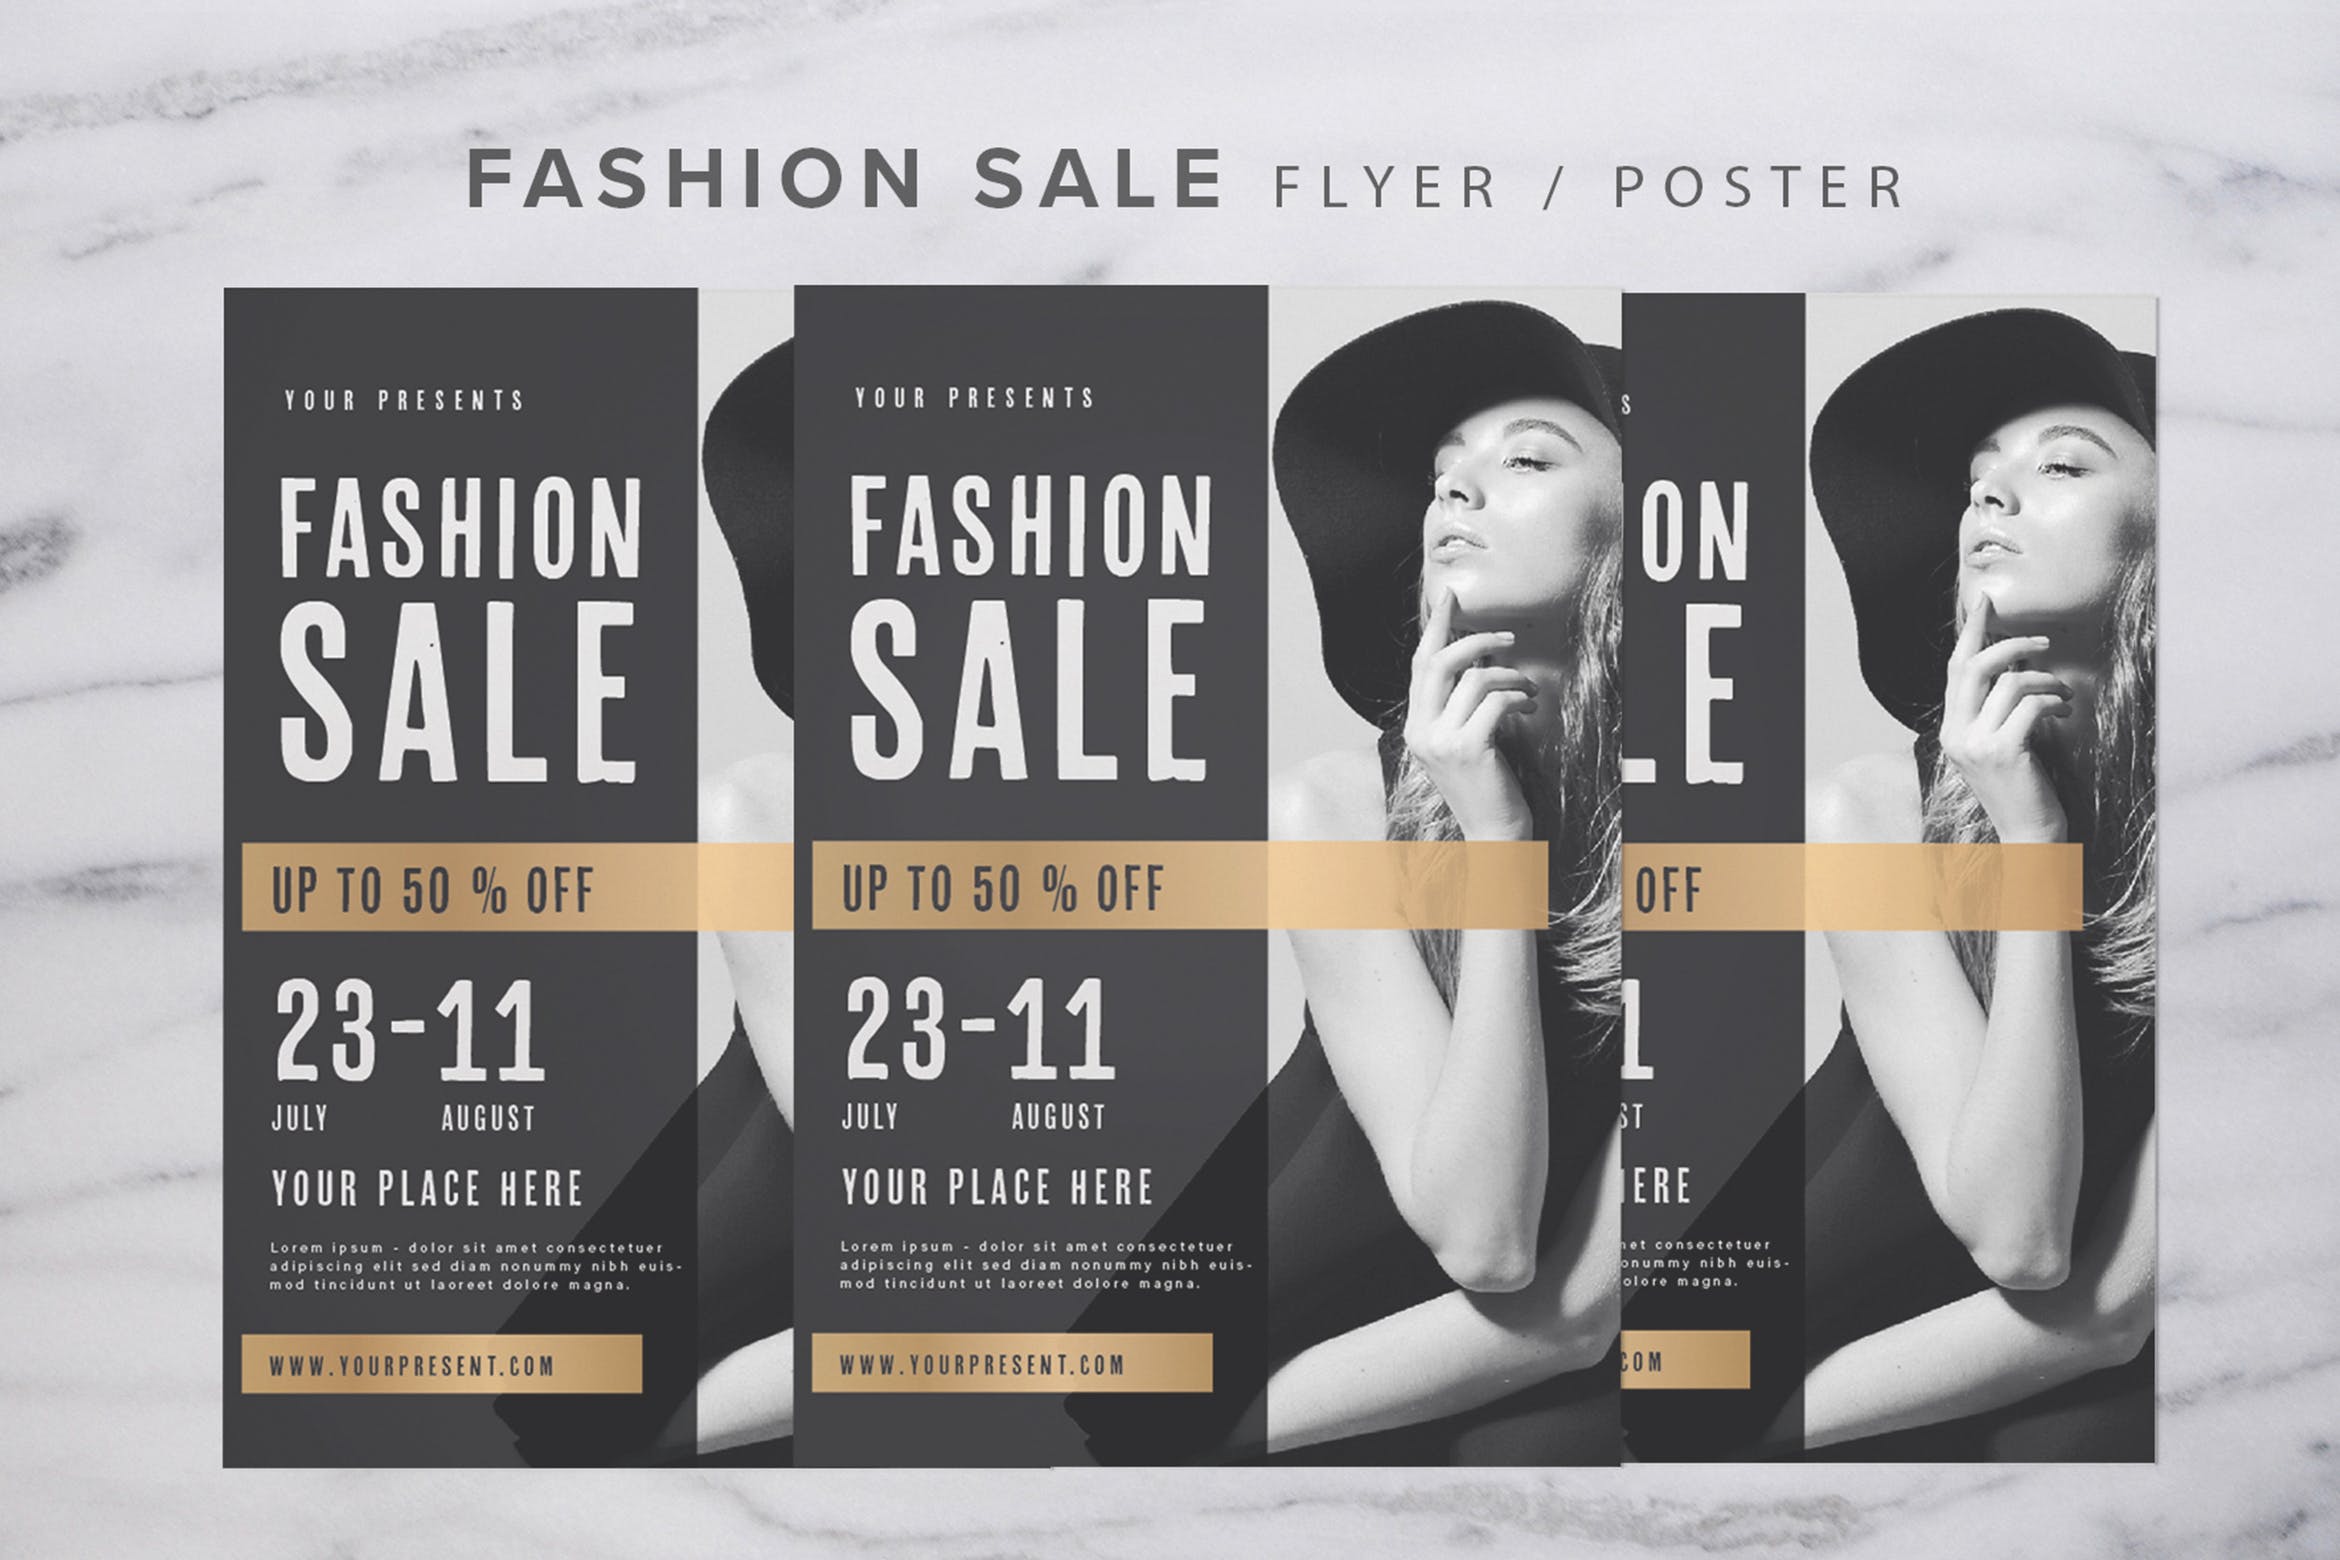 新潮时尚欧美时装秀销售广告海报传单设计模板 Fashion Show Flyer插图